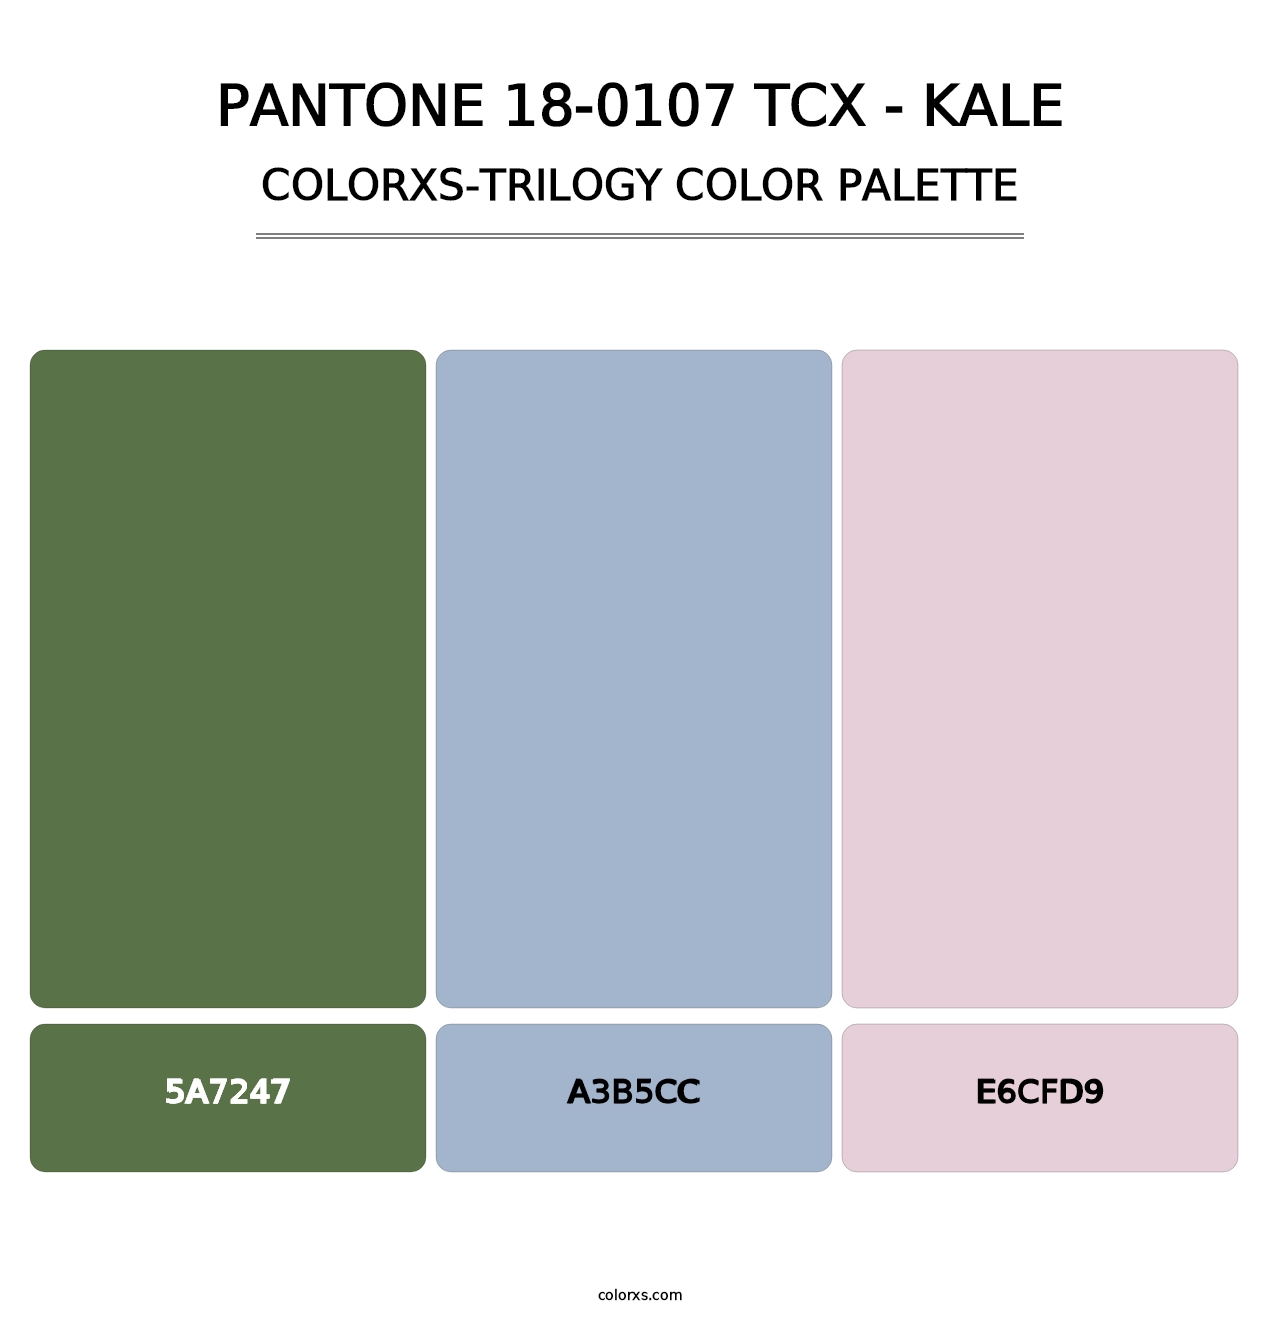 PANTONE 18-0107 TCX - Kale - Colorxs Trilogy Palette